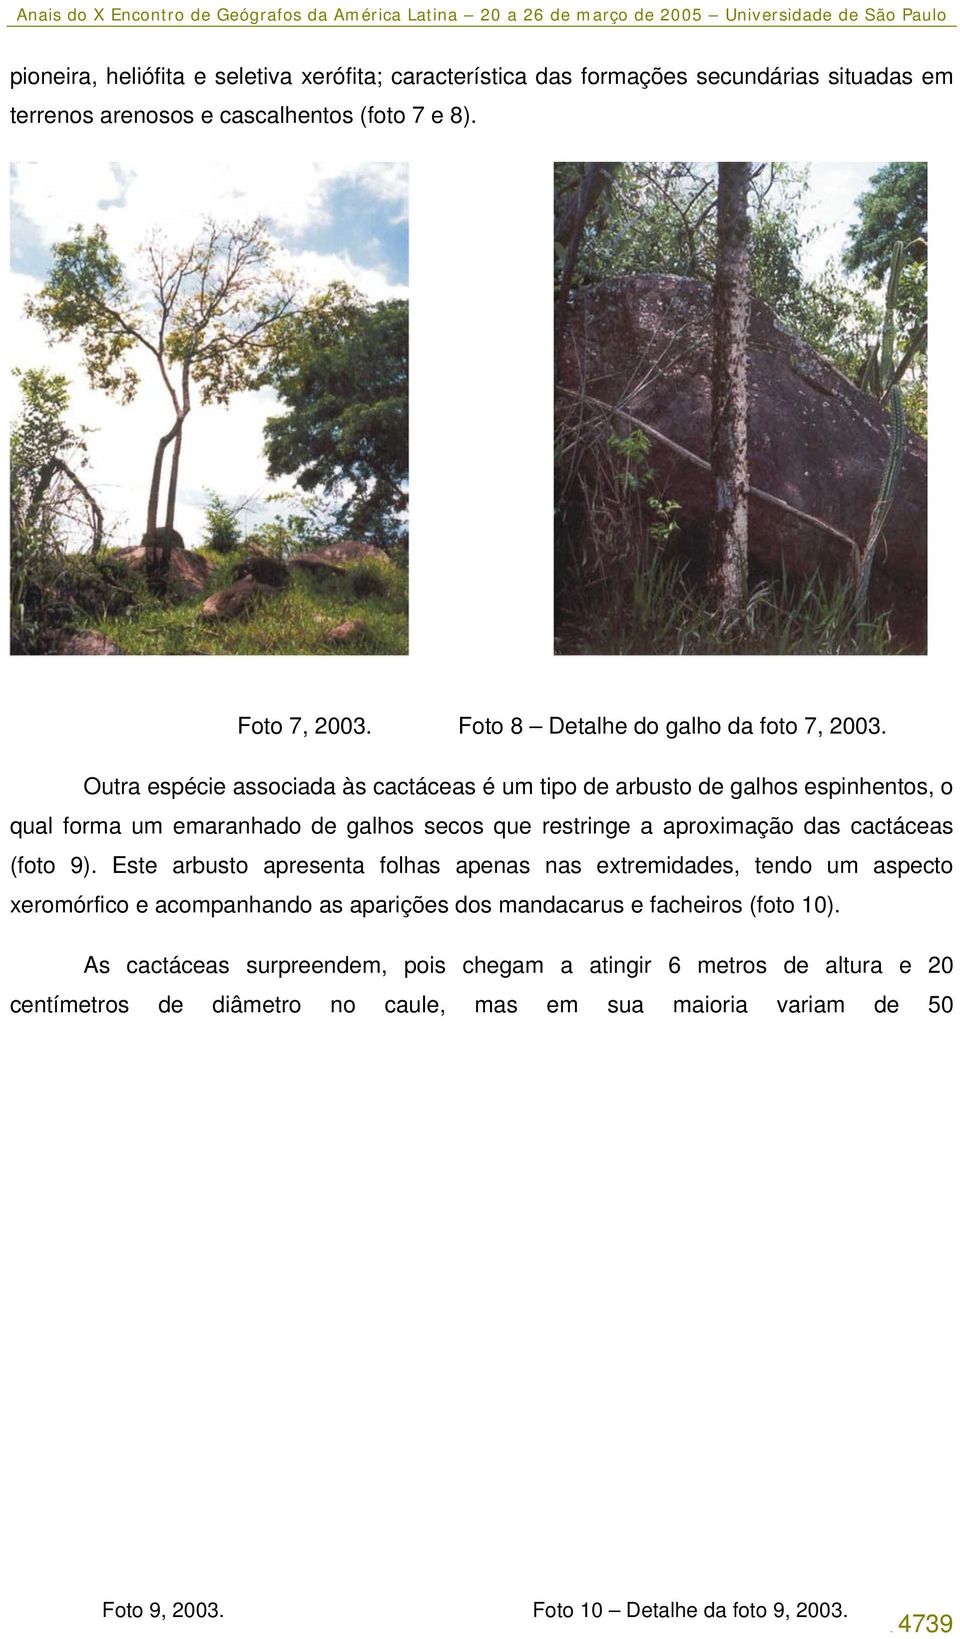 Outra espécie associada às cactáceas é um tipo de arbusto de galhos espinhentos, o qual forma um emaranhado de galhos secos que restringe a aproximação das cactáceas (foto 9).